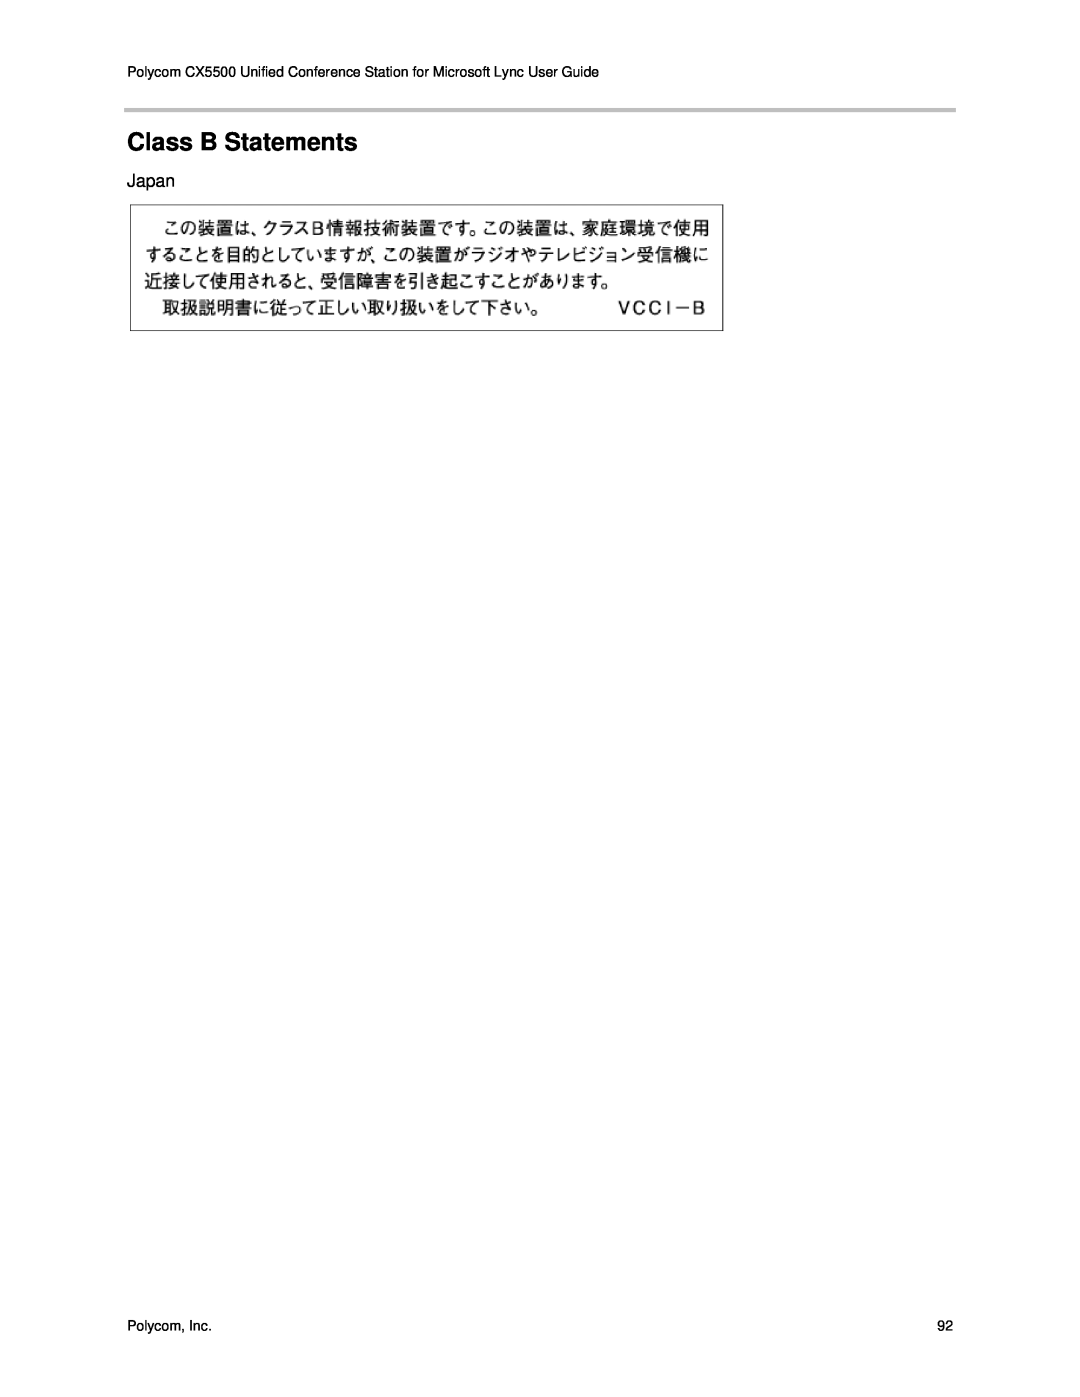 Polycom CX5500 manual Class B Statements, Japan 